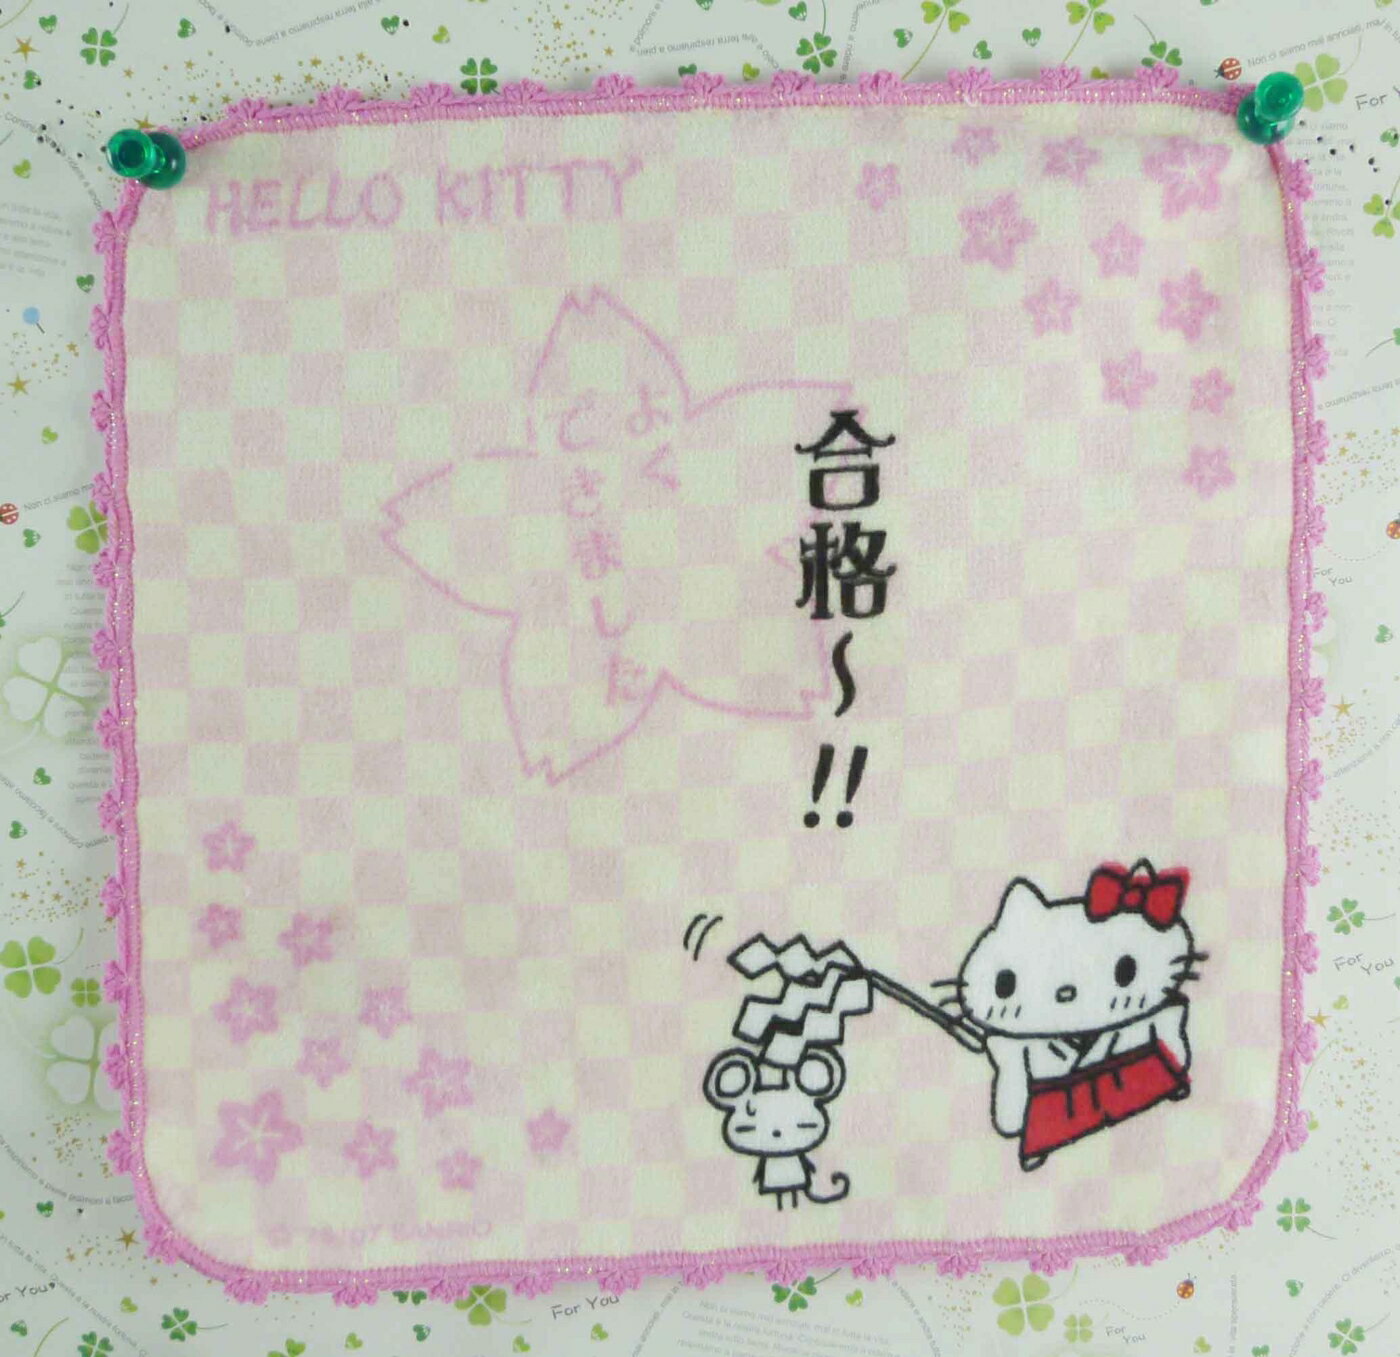 【震撼精品百貨】Hello Kitty 凱蒂貓 方巾/毛巾-粉白格(合格) 震撼日式精品百貨